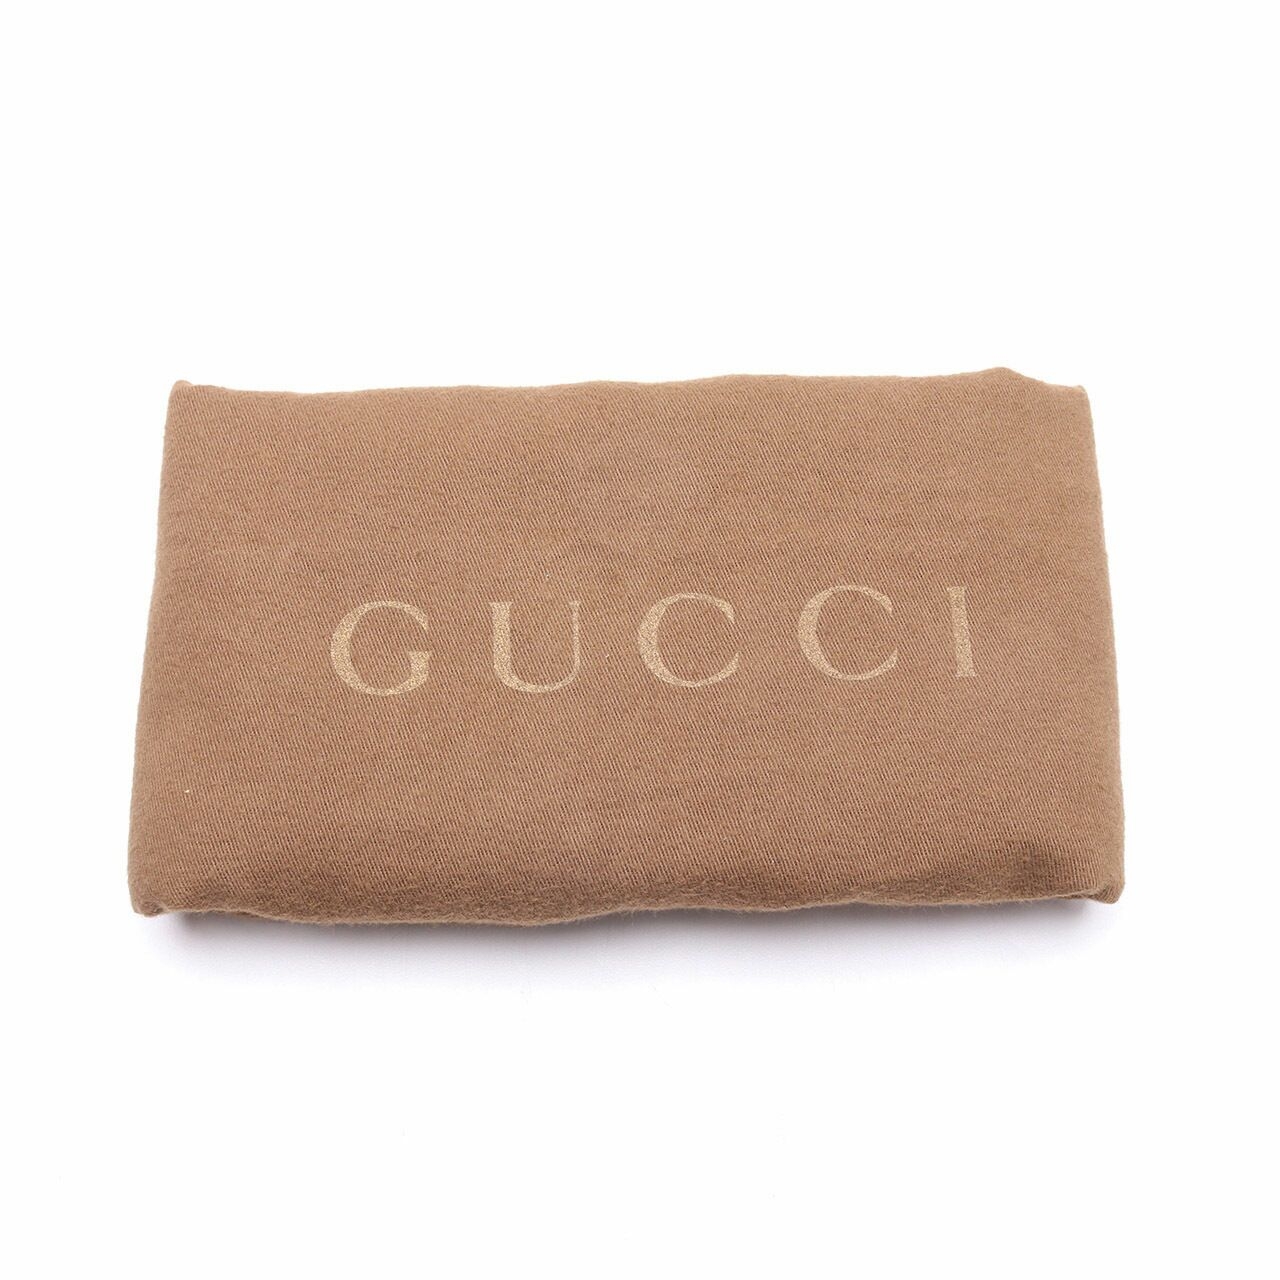 Gucci Dionysus Red Shoulder Bag